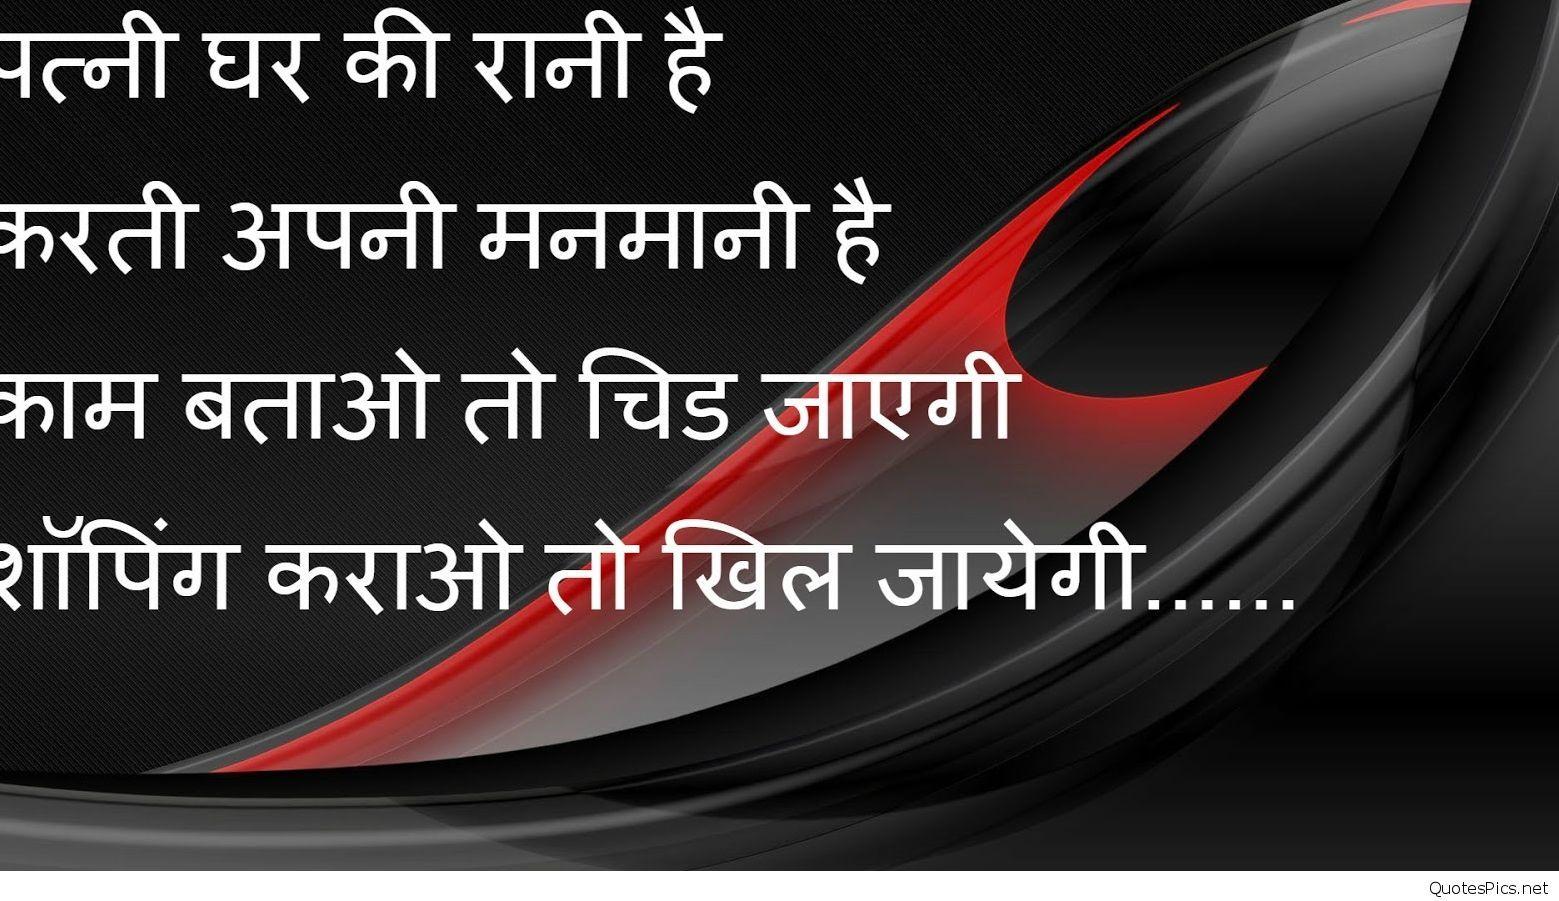 Top sad hindi shayari on life quotes, image, wallpaper